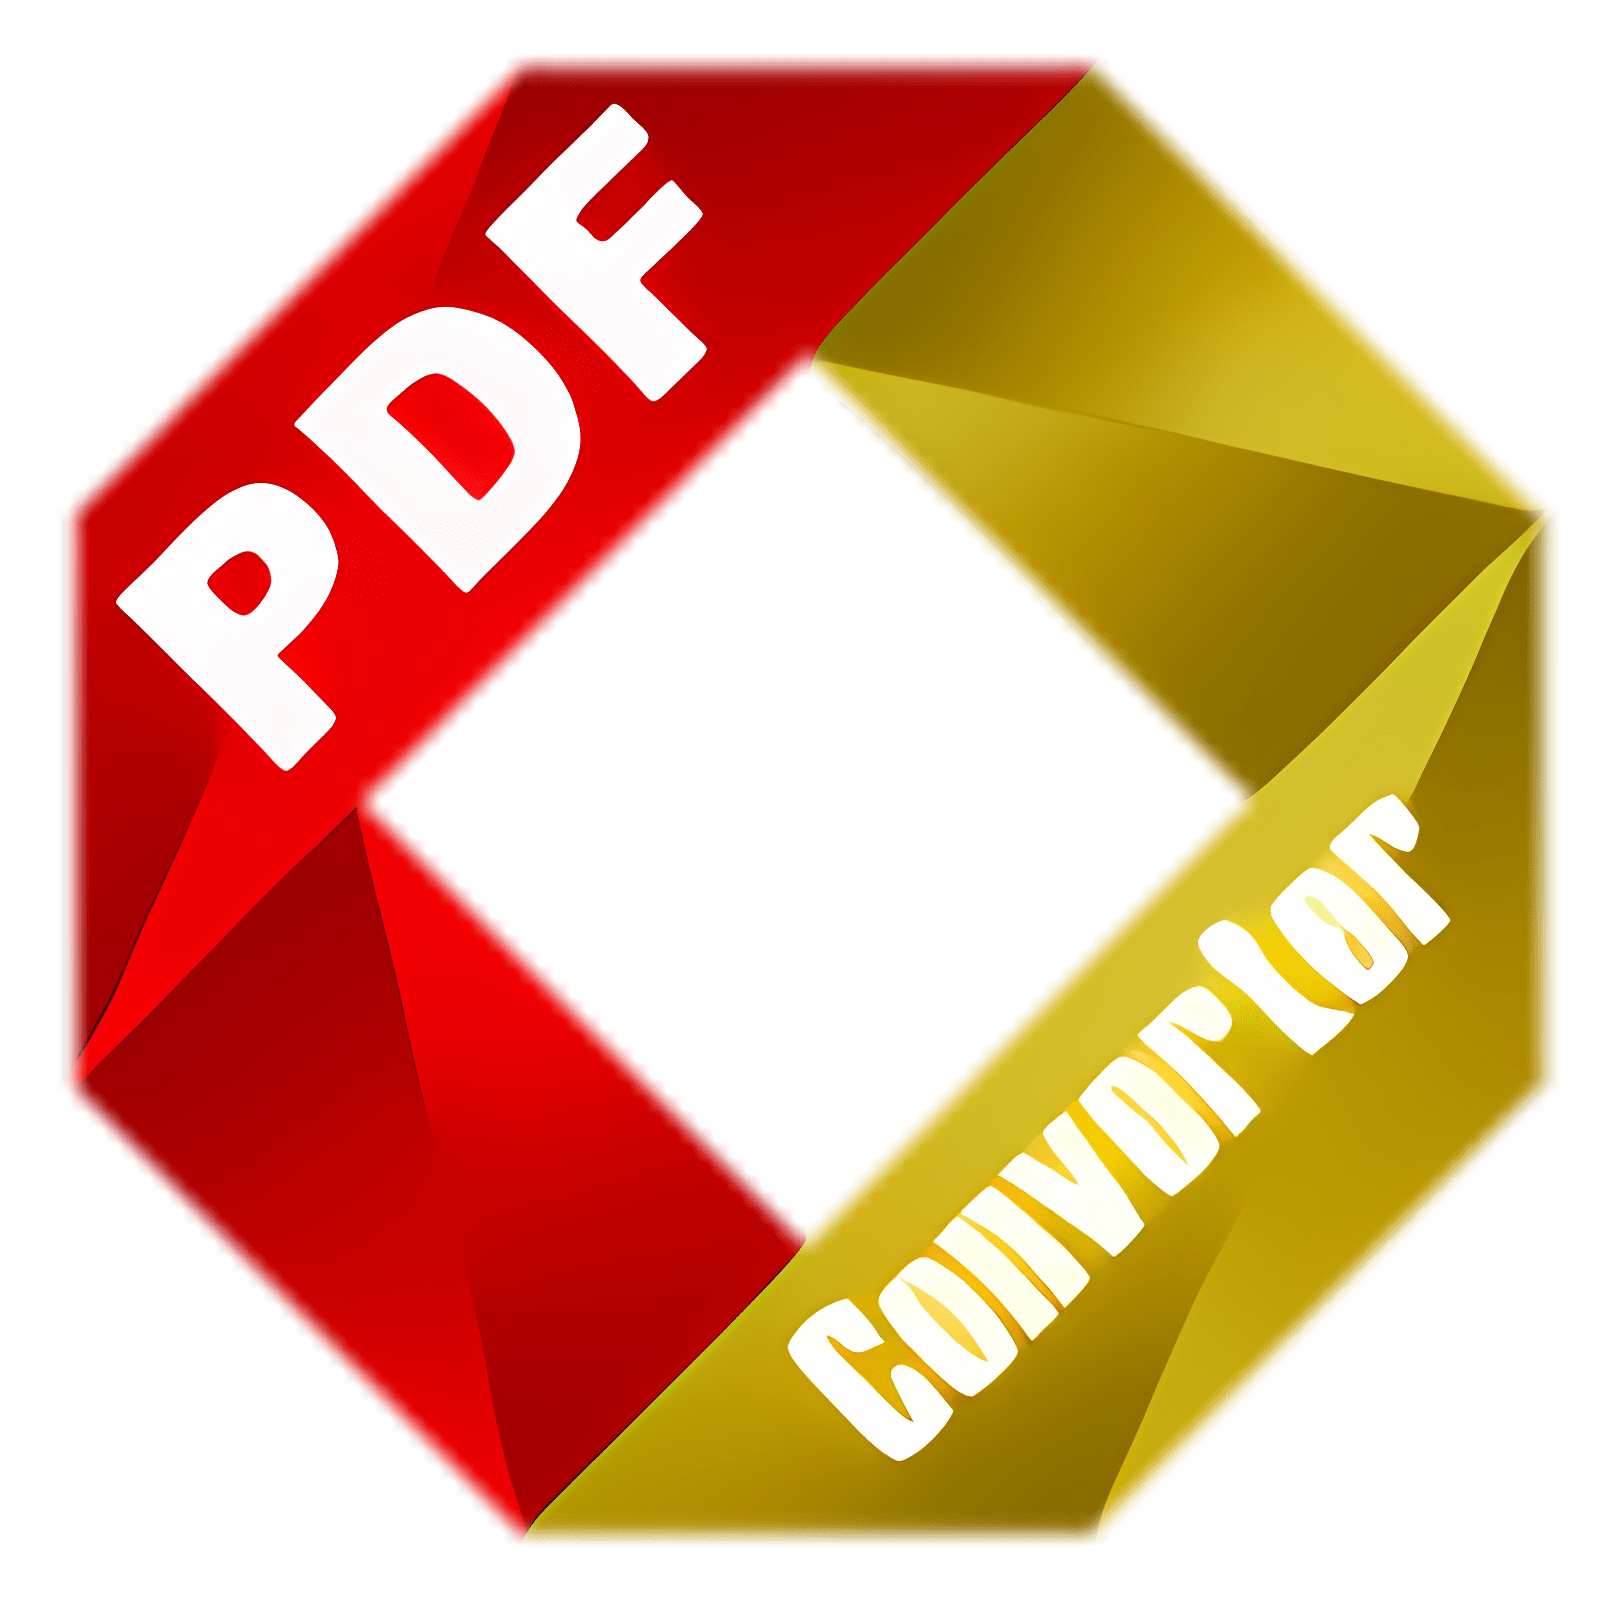 Baixar PDF Converter for Mac Instalar Mais recente Aplicativo Downloader